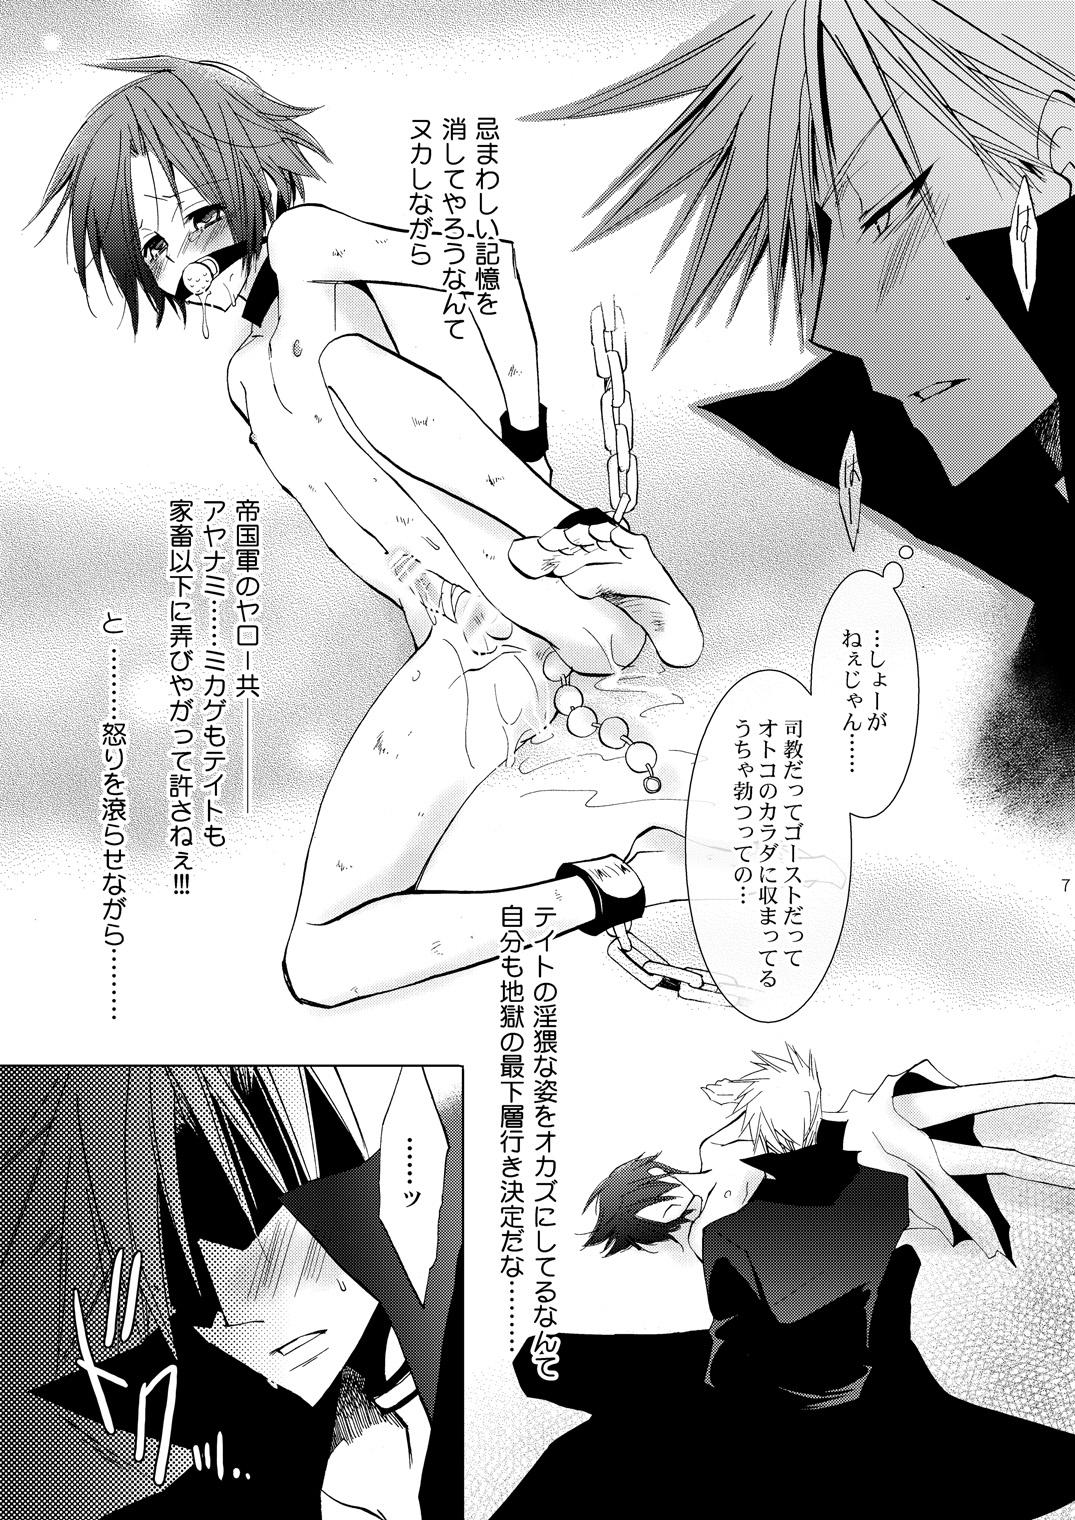 Pegging Hikatokage wa futatsu de hitotsu - 07-ghost Boy Girl - Page 6